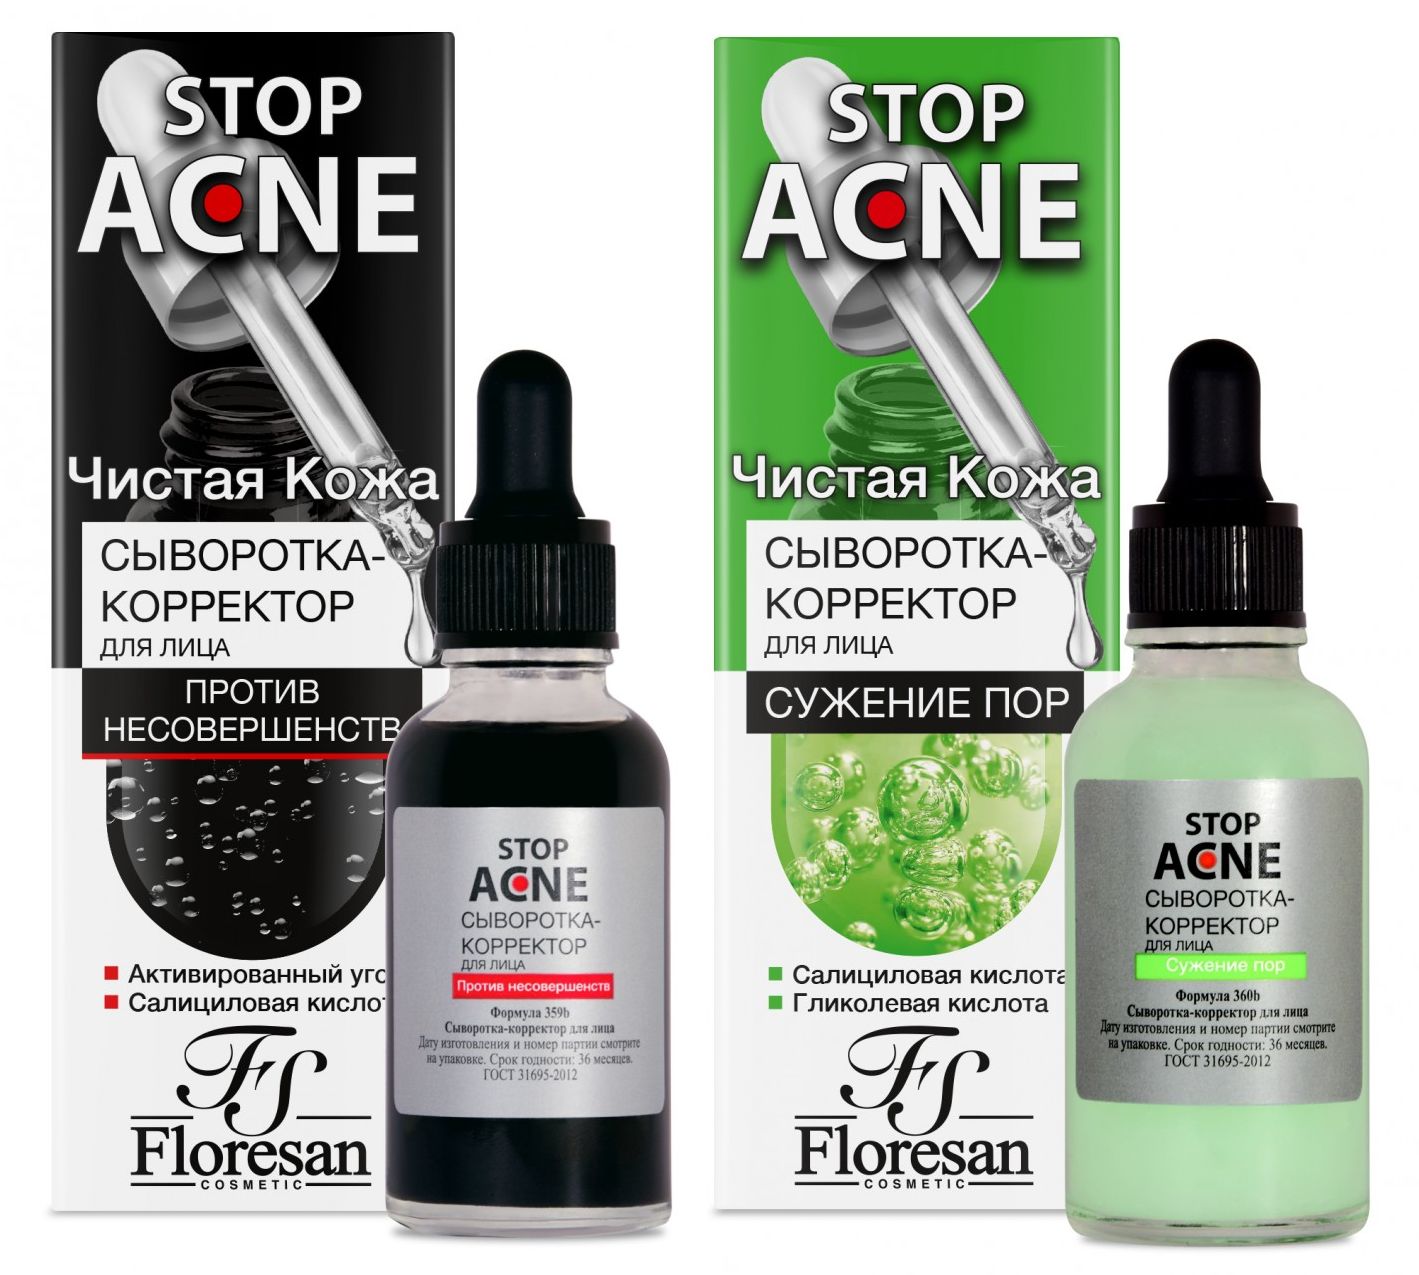 Набор Floresan Stop Acne сыворотка-корректор для лица против несовершенст 30 млх2 шт